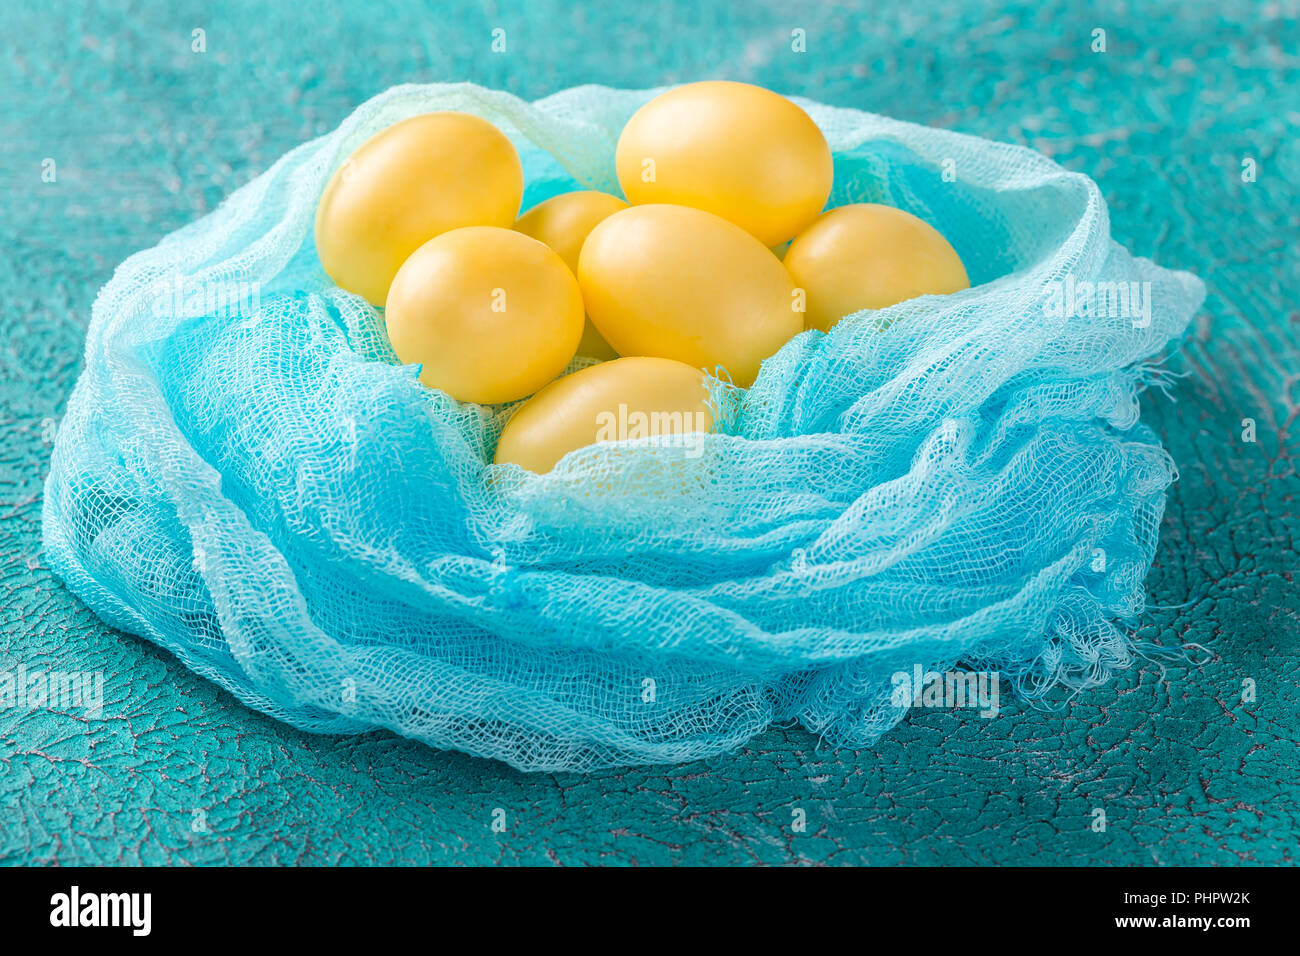 Los huevos de Pascua en un recipiente de madera Foto de stock